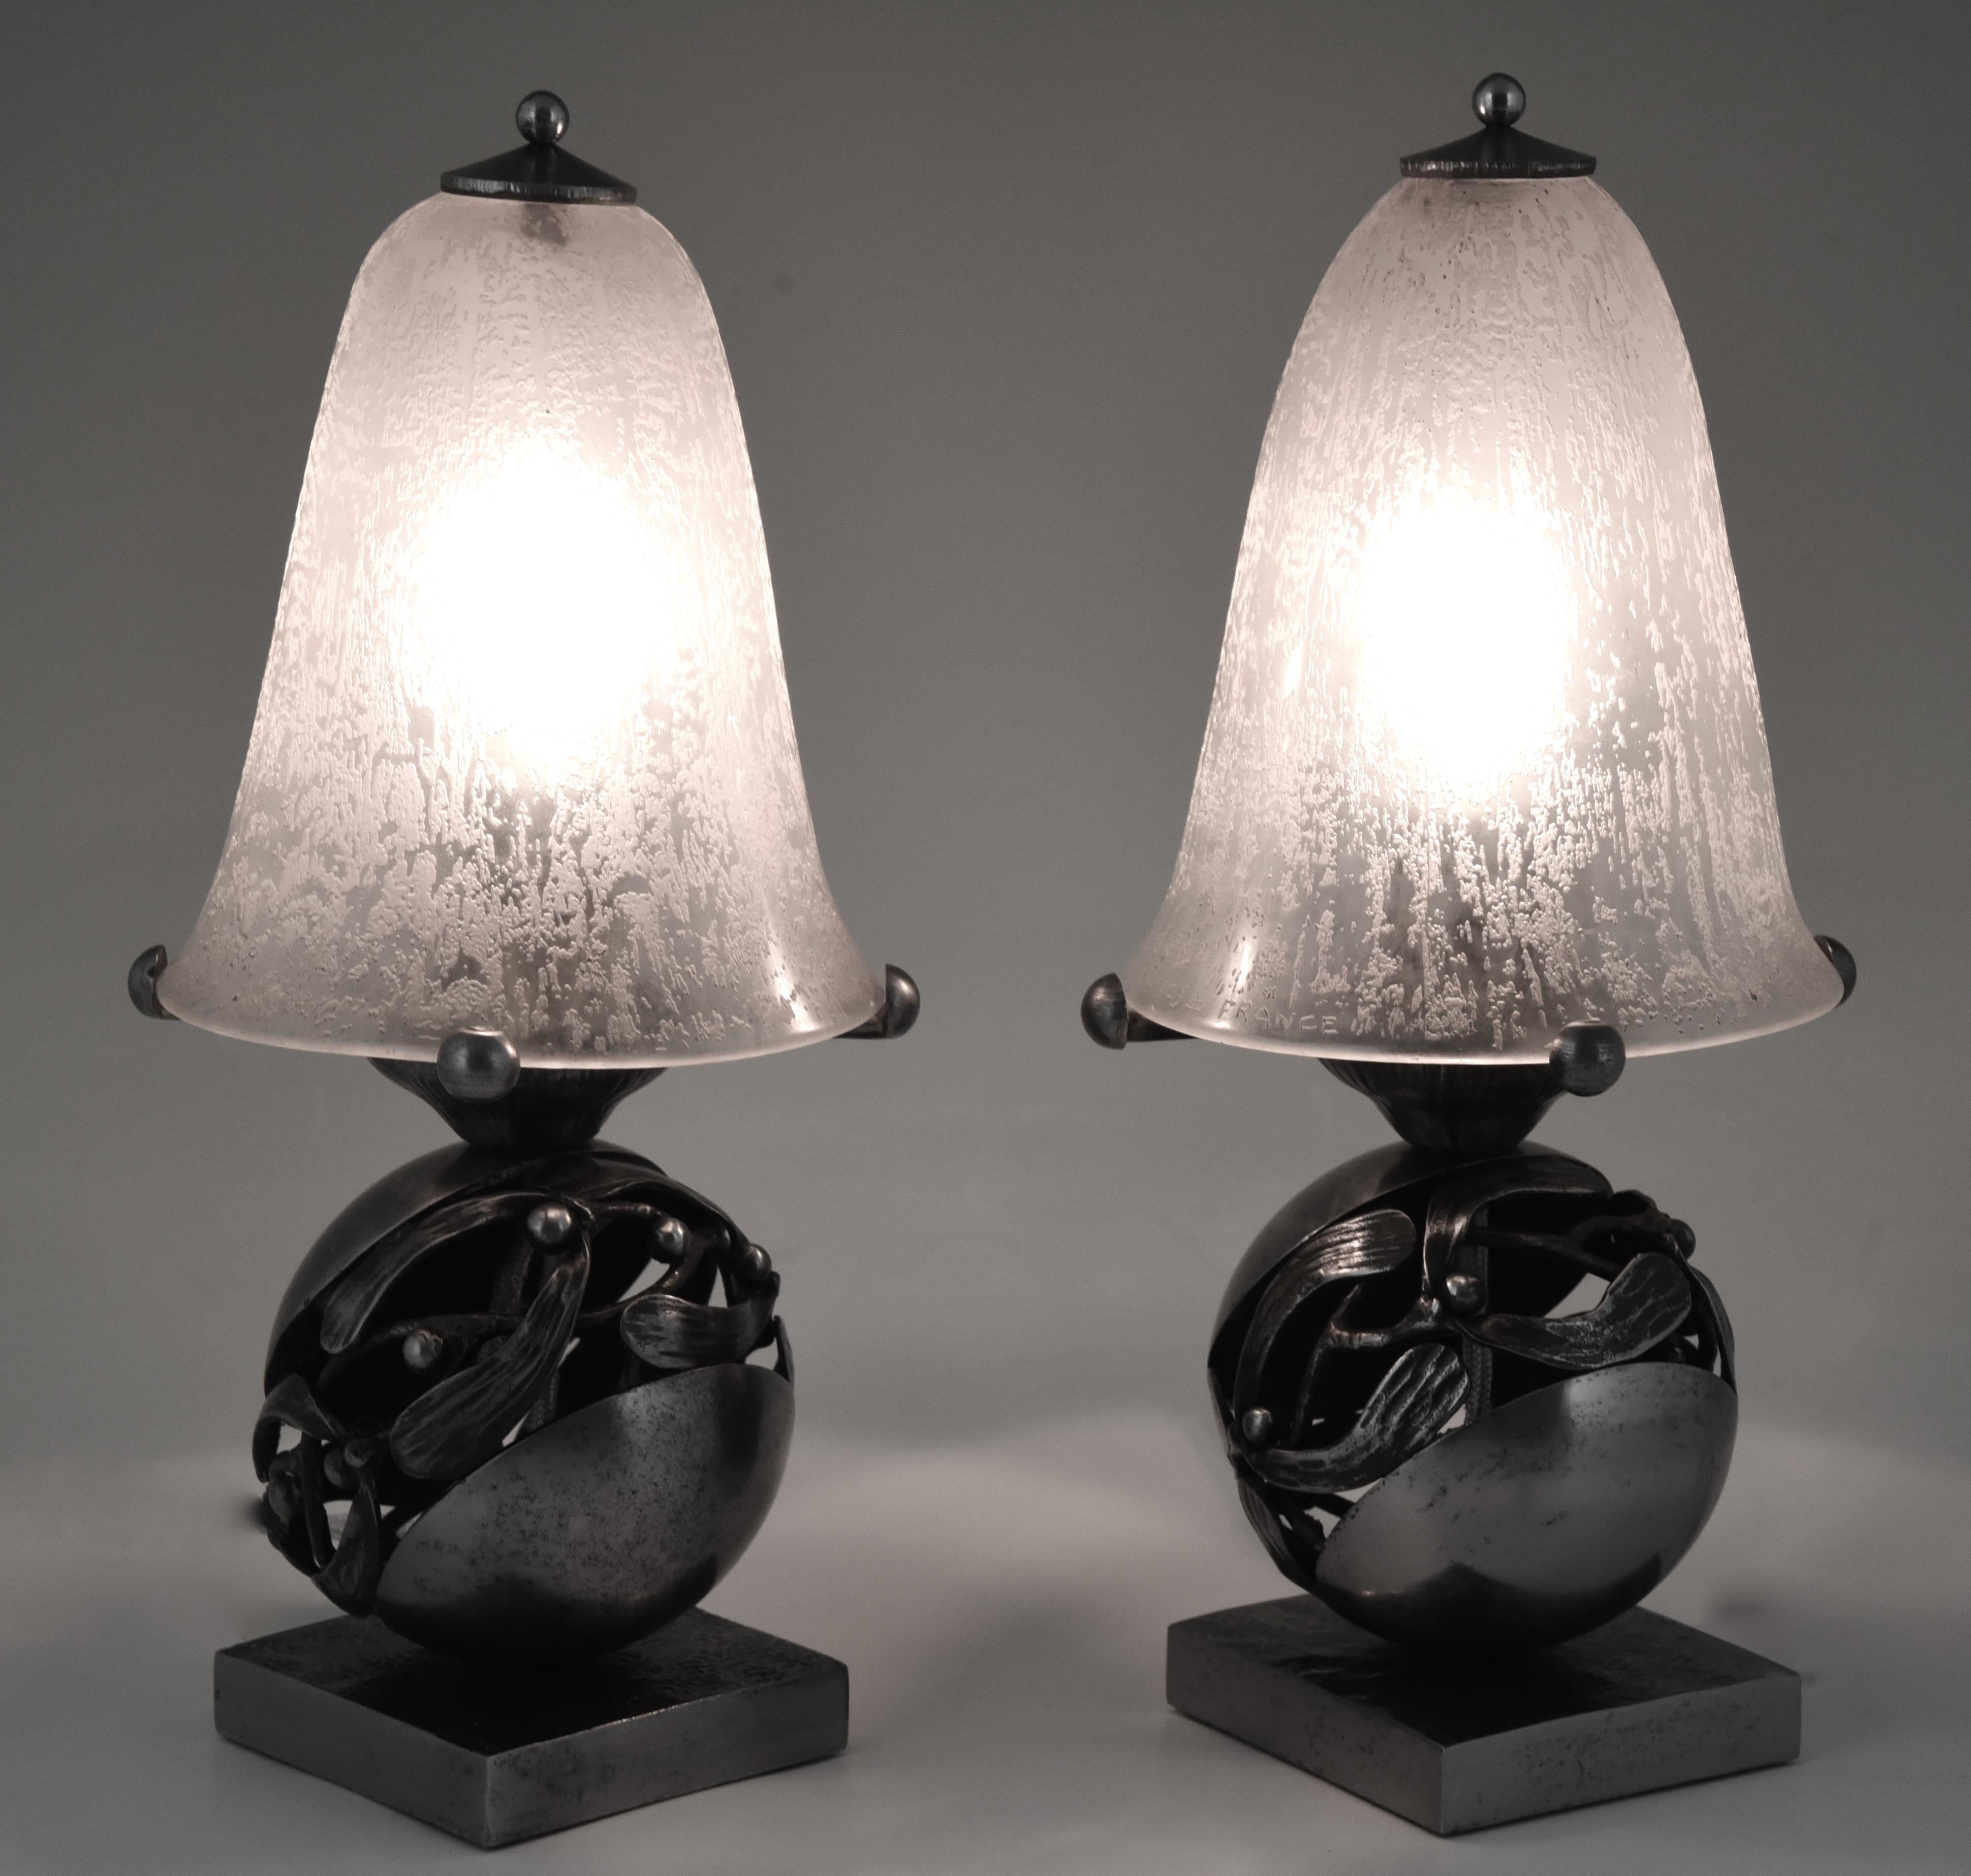 A pair of Edgar Brandt & Daum Mistletoe or “Boule de Gui” Art Deco table lamps. Fine wrought iron base with original silver grey patina. Etched Daum Nancy glass shades, circa 1920.
The Boule de gui is a 